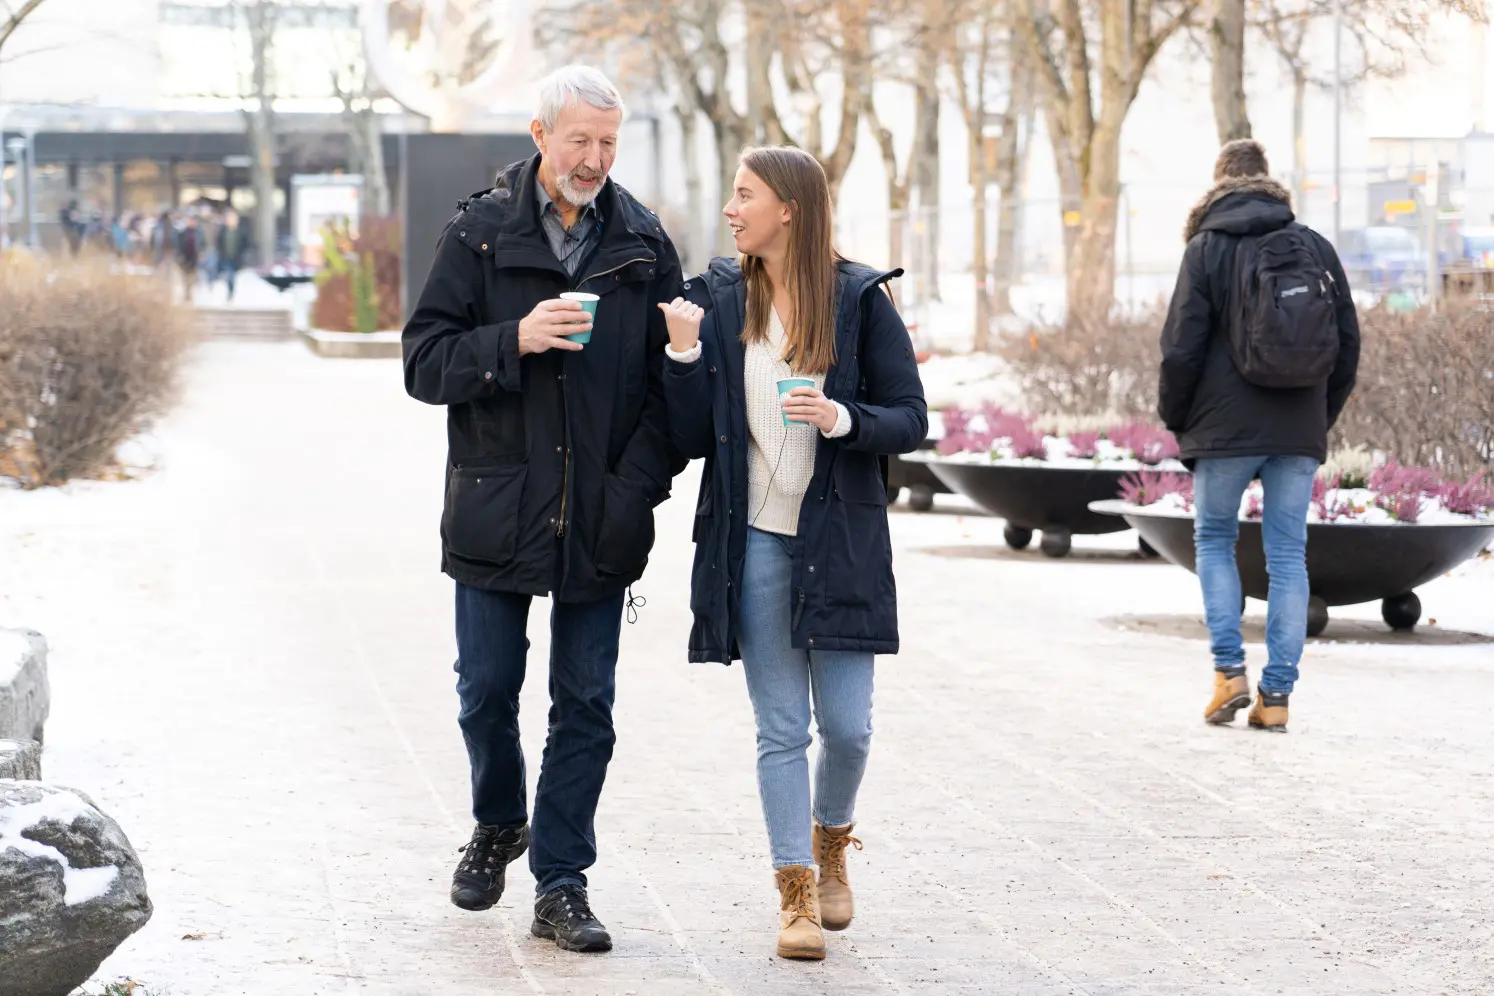 Sanne og Terje i samtale mens de spaserer i en park med en kopp kaffe i hånden